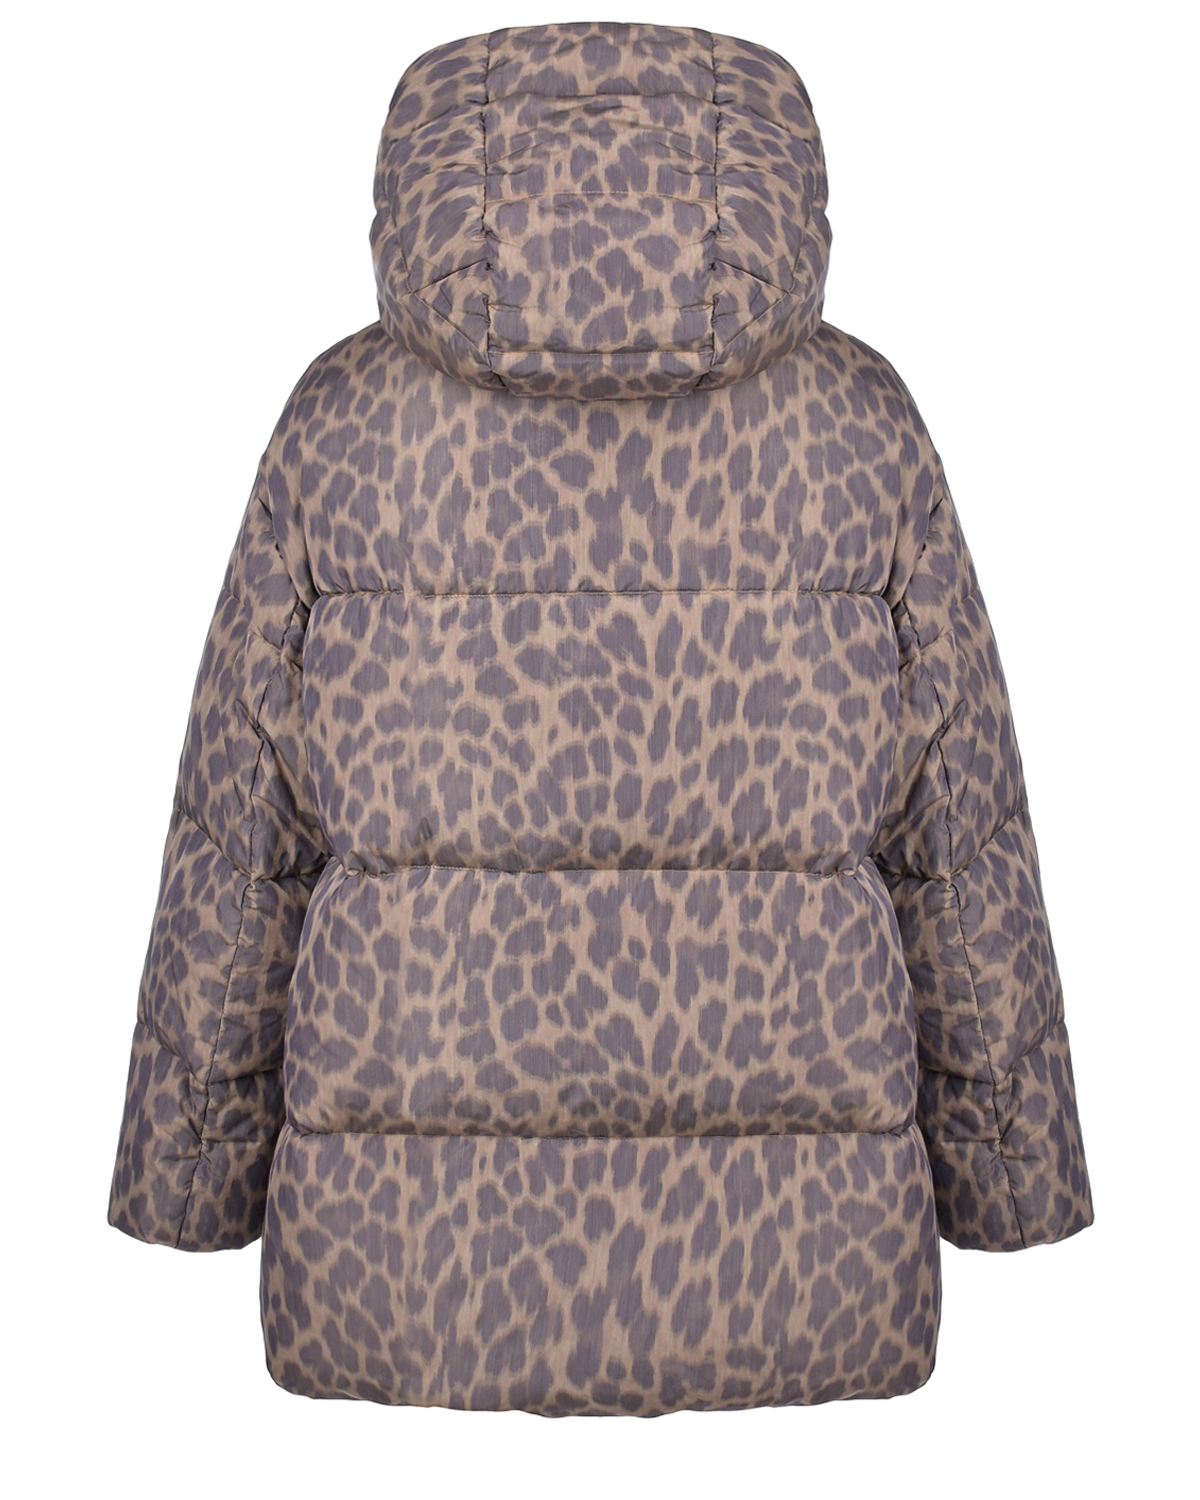 Пуховая куртка с леопардовым принтом Freedomday, размер 38, цвет бежевый - фото 4